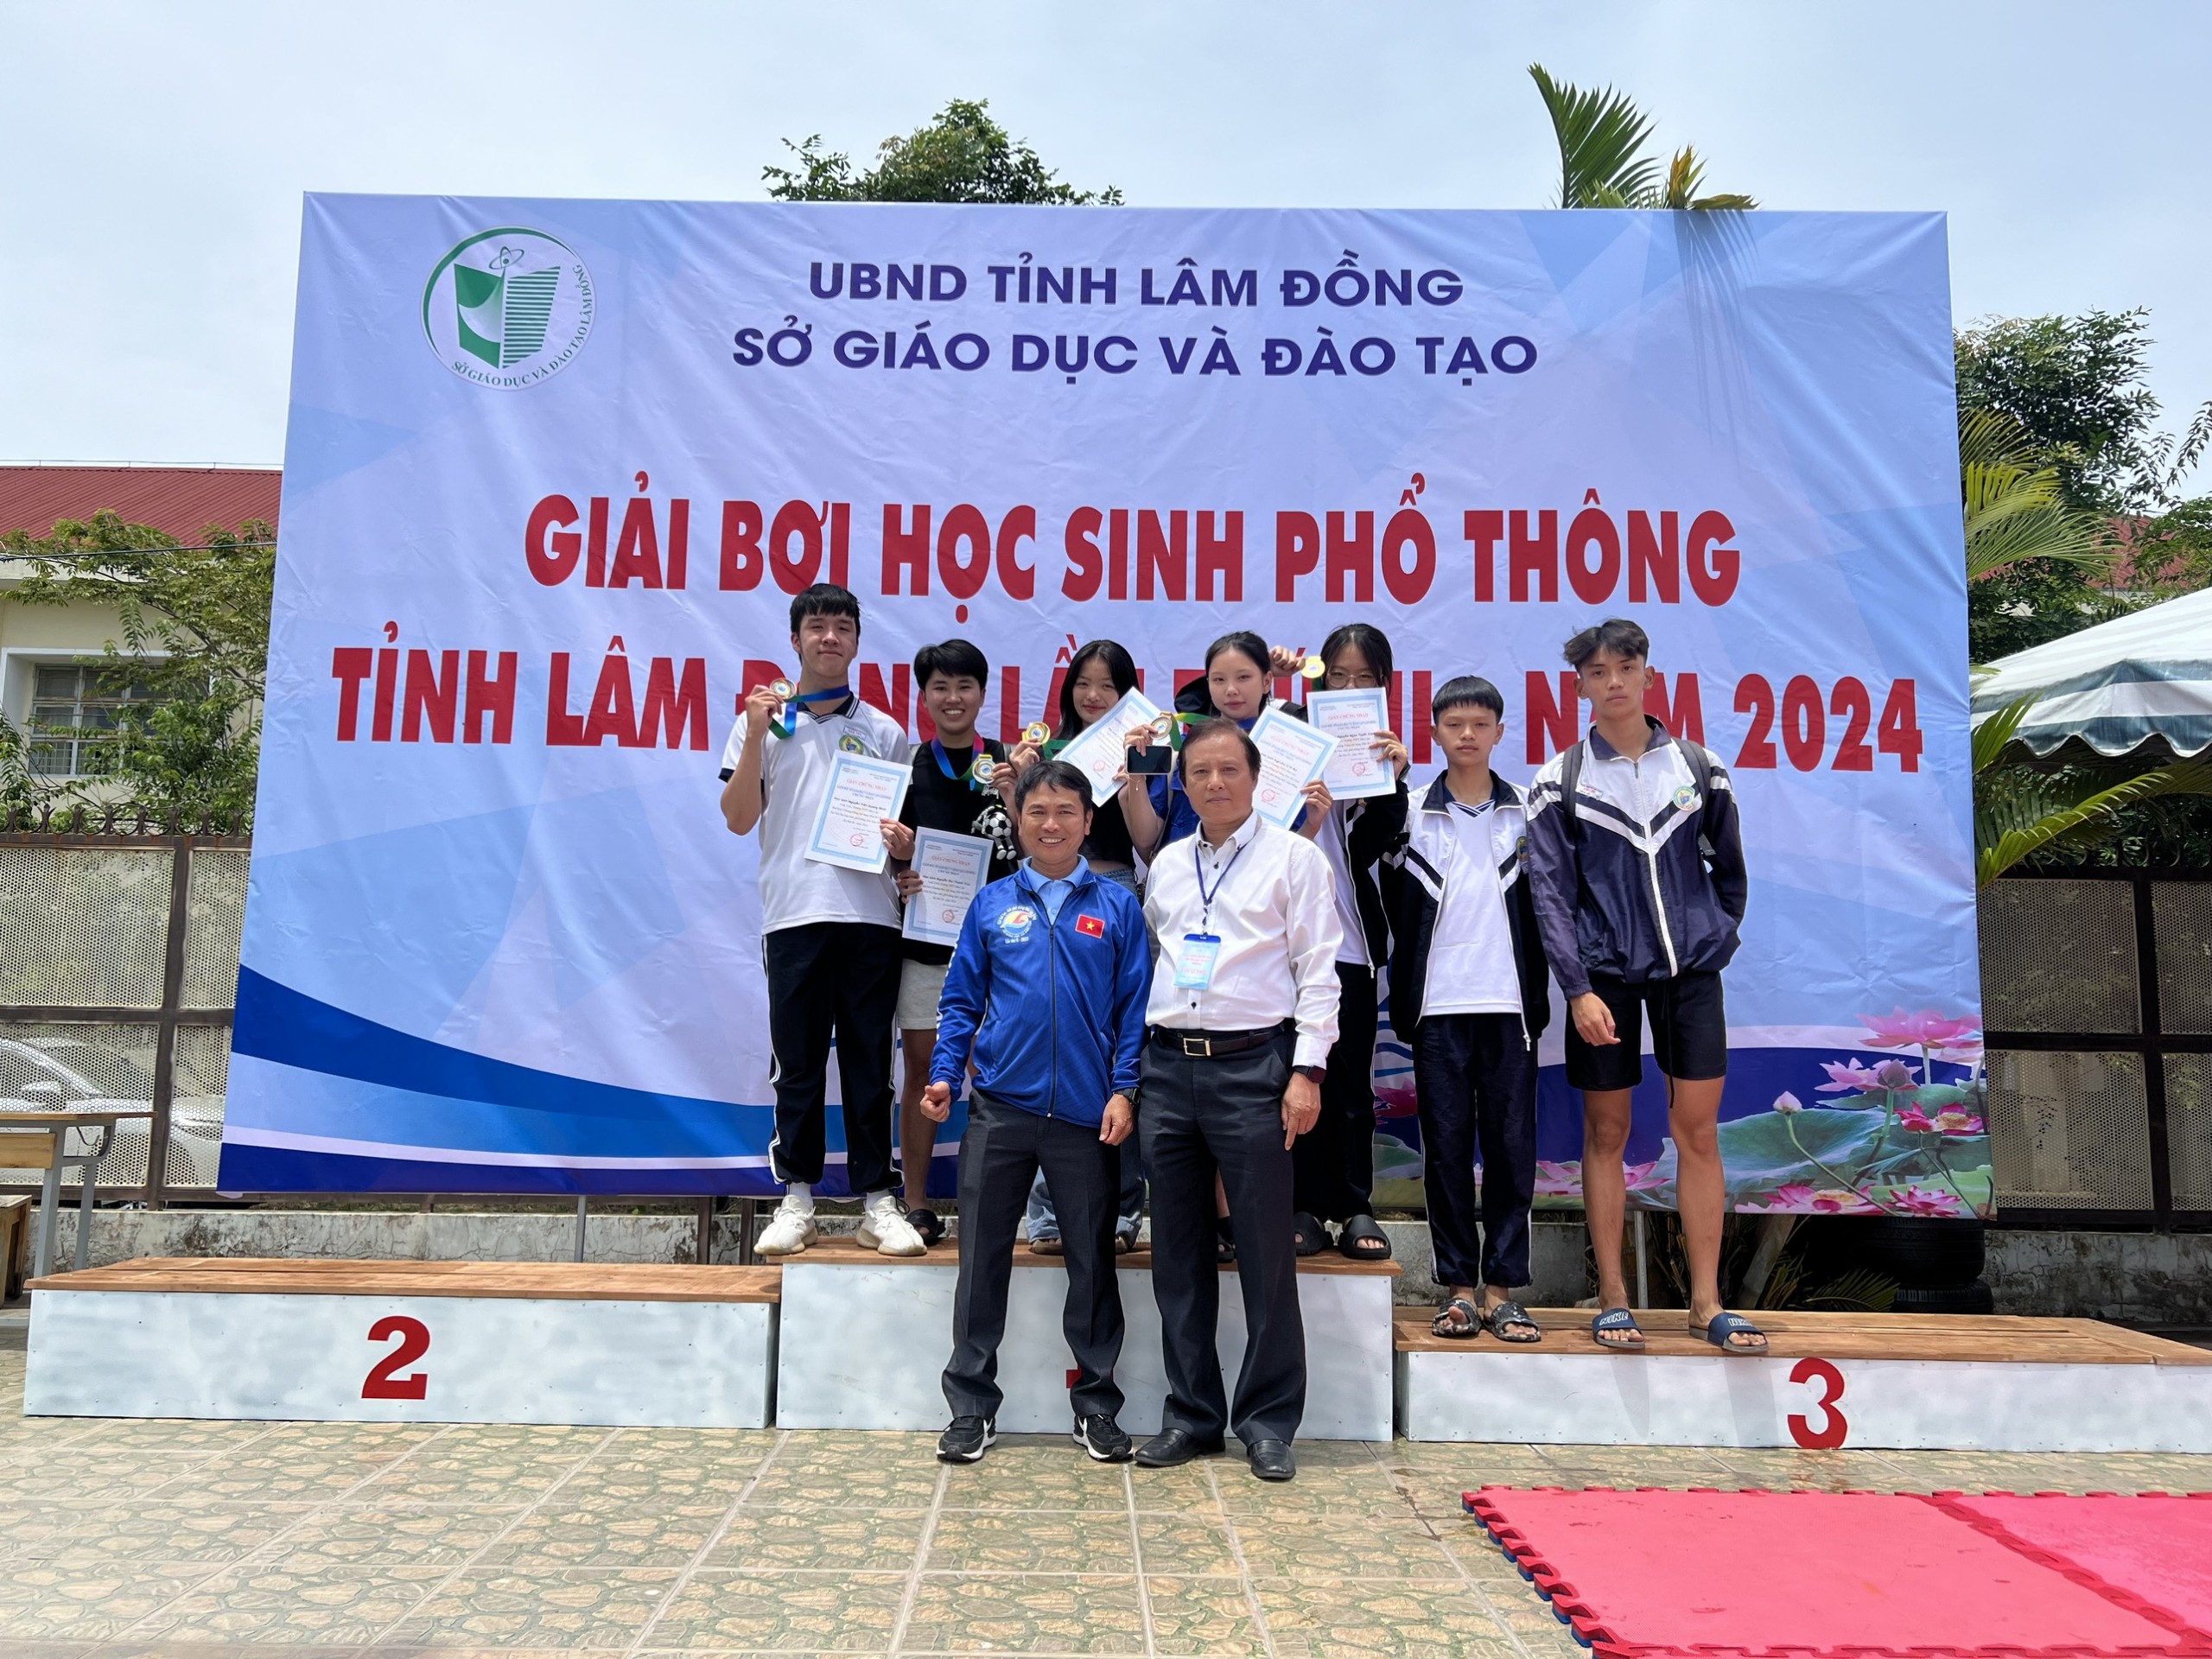 Trường THPT Bảo Lộc đạt hạng Nhất giải Bơi học sinh tỉnh Lâm Đồng lần thứ III năm 2024